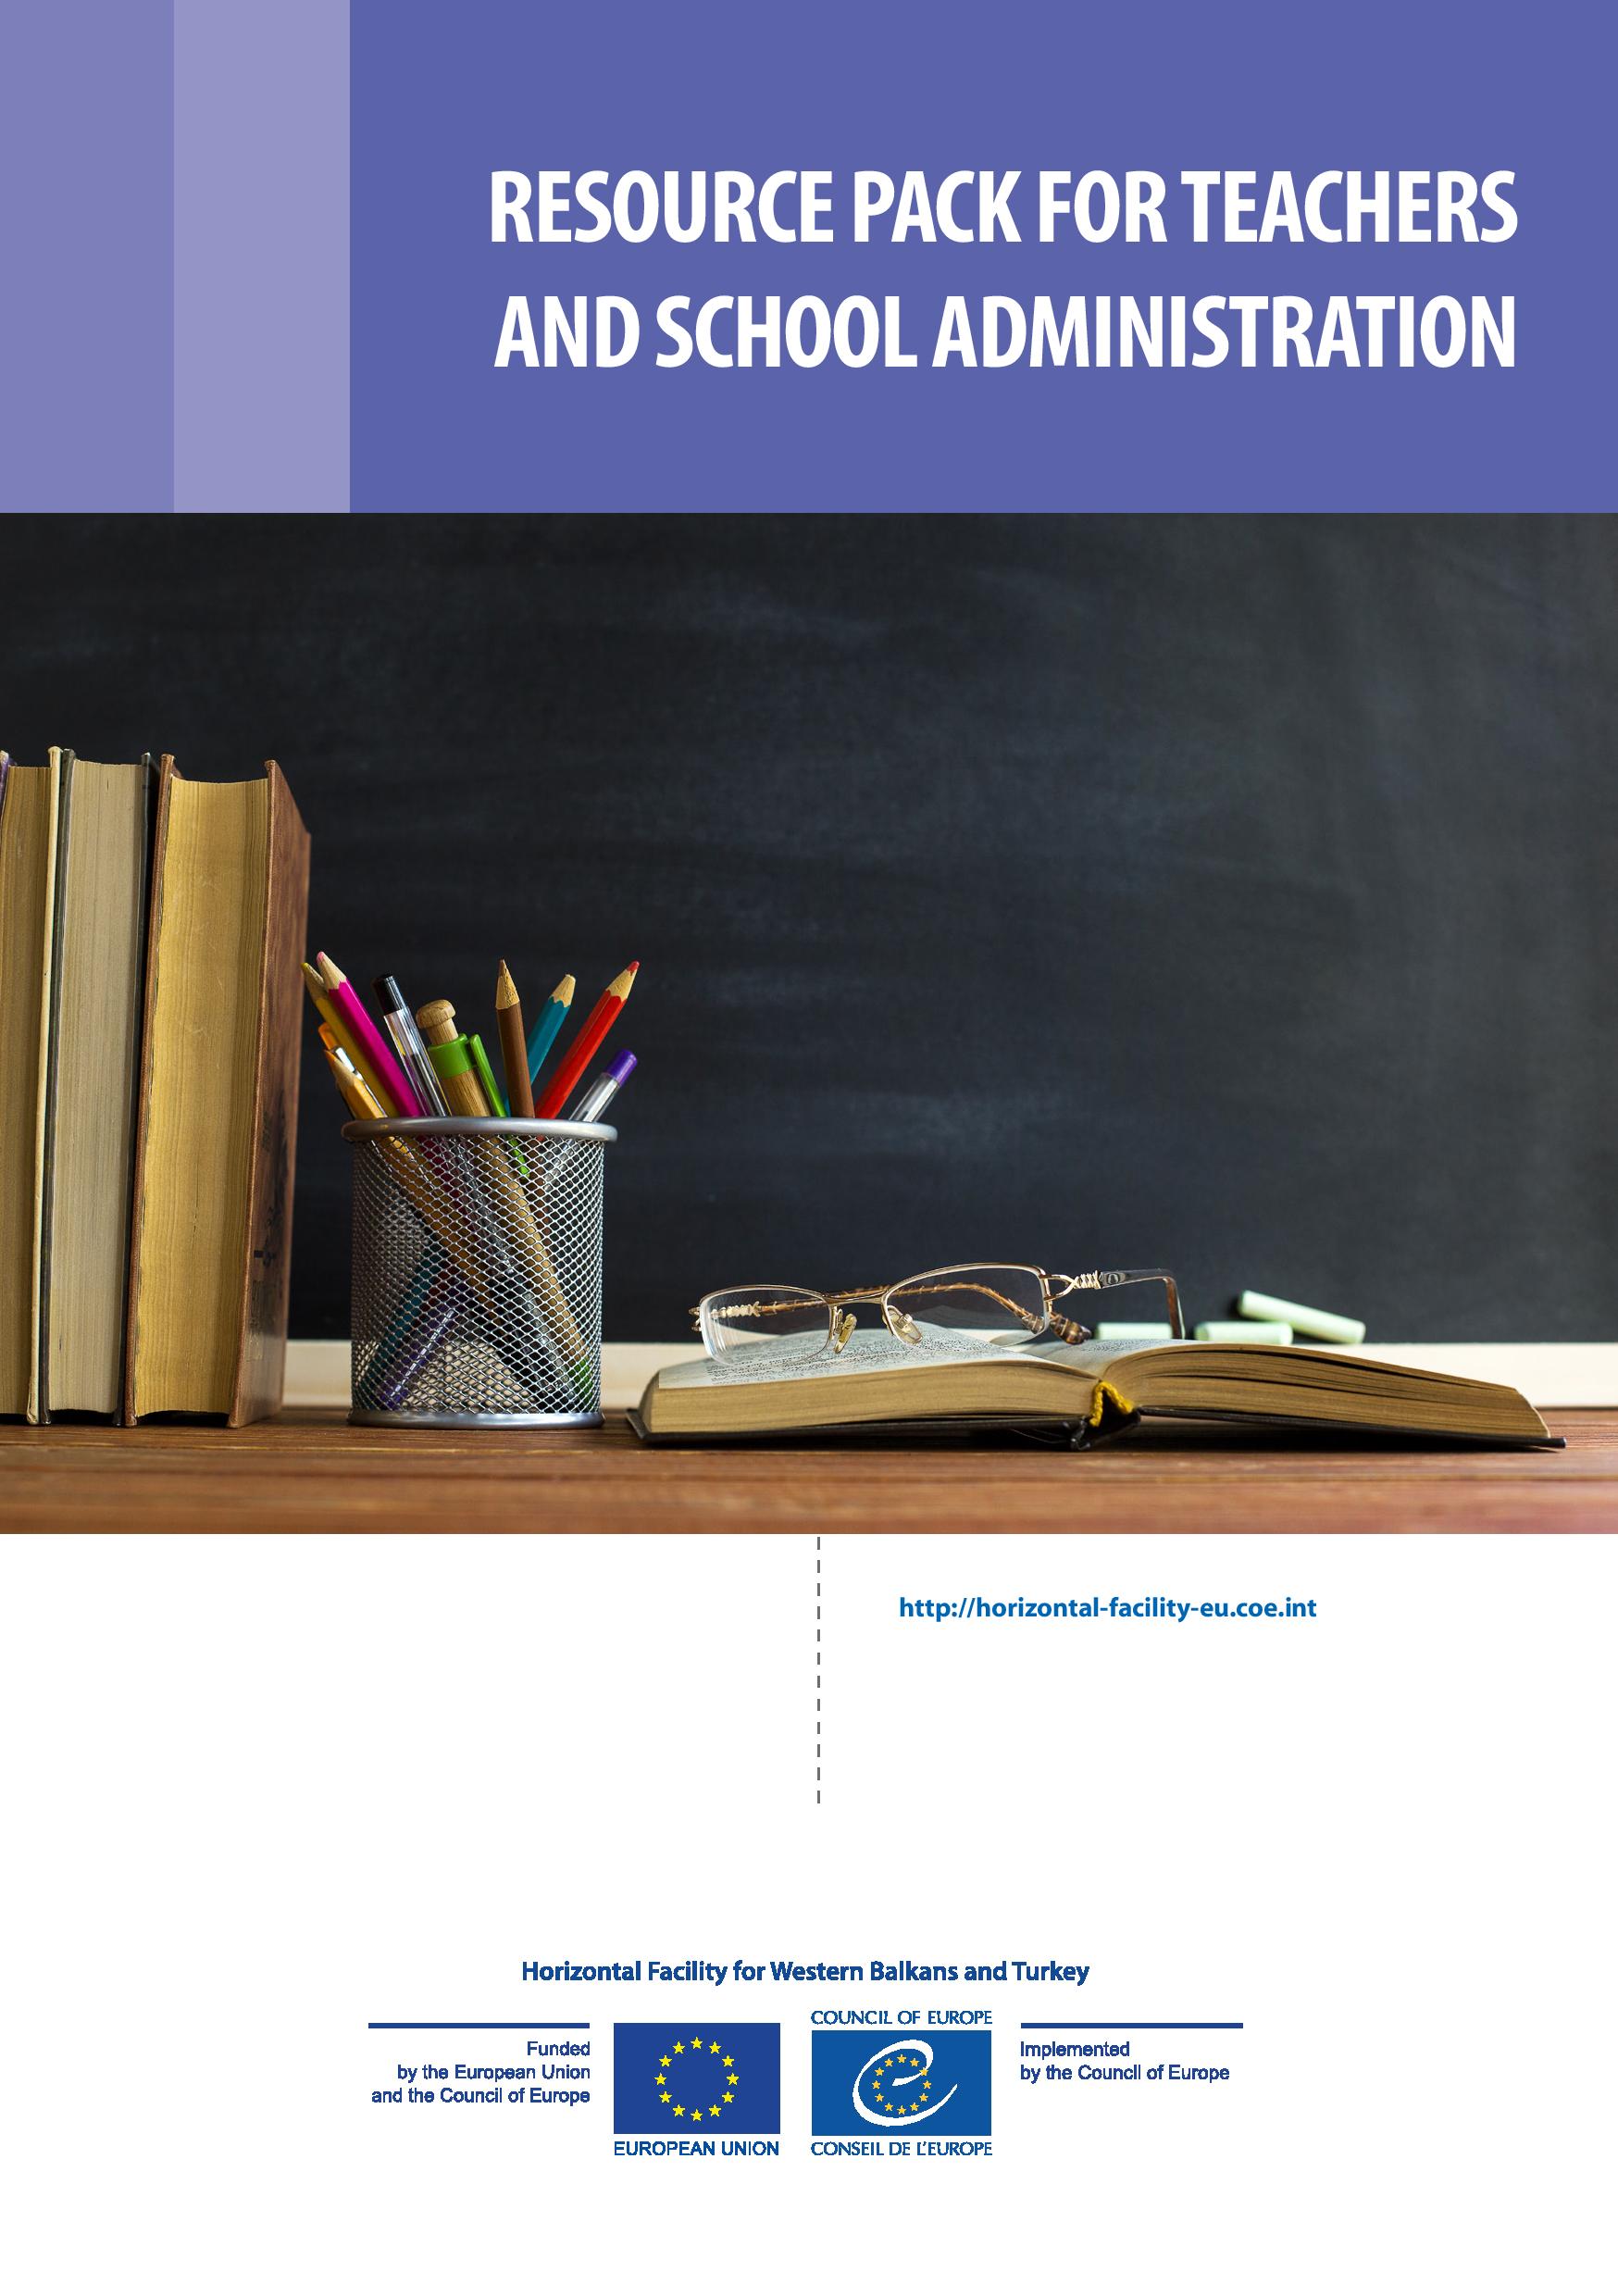 Paketë Burimore për Mësuesit dhe Administratën e Shkollës